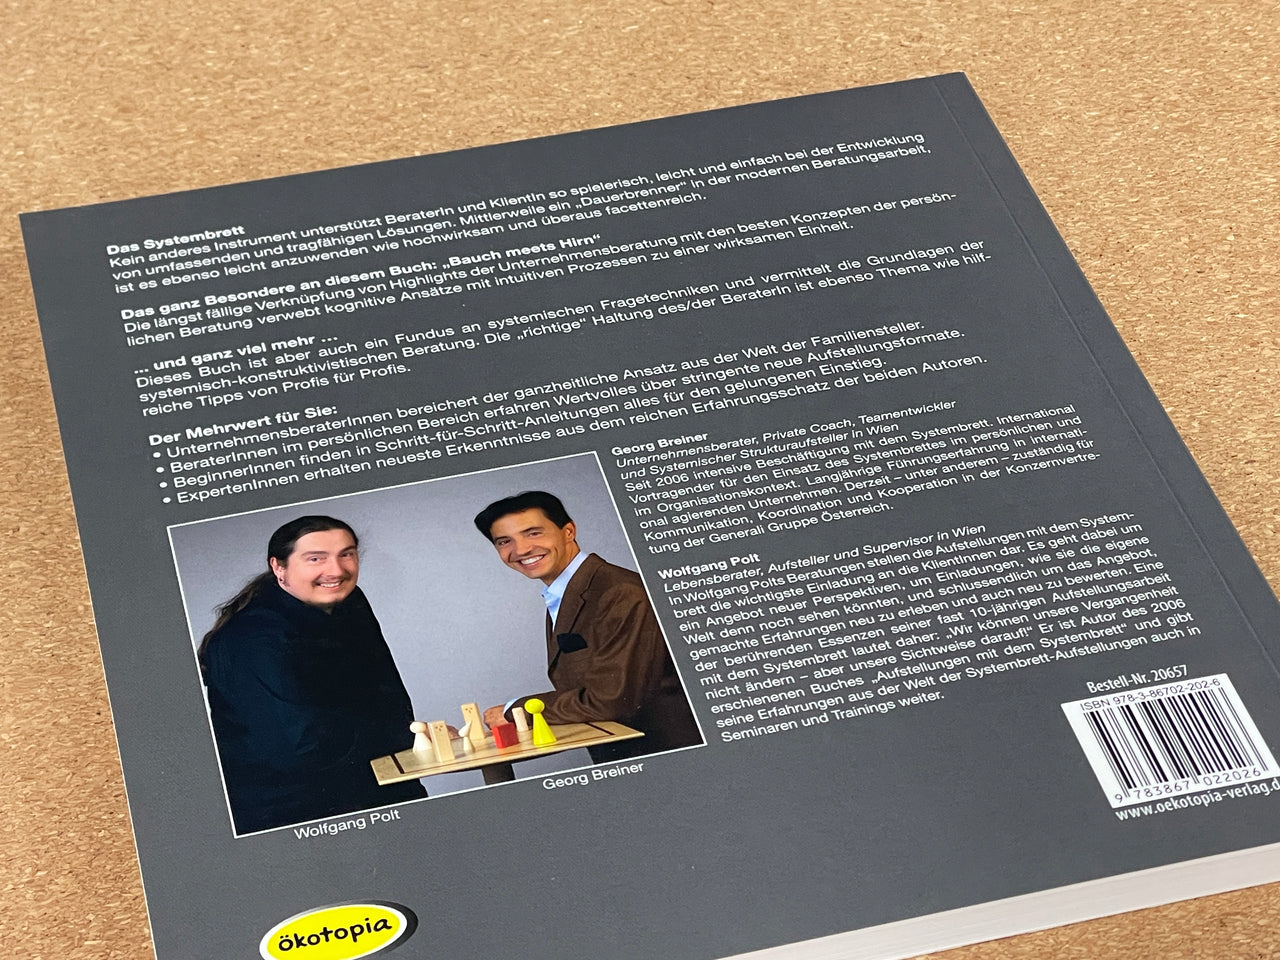 Buch liegt auf dem Tisch: Lösungen mit dem Systembrett - Ein umfassendes Handbuch für Aufstellungen mit dem Systembrett